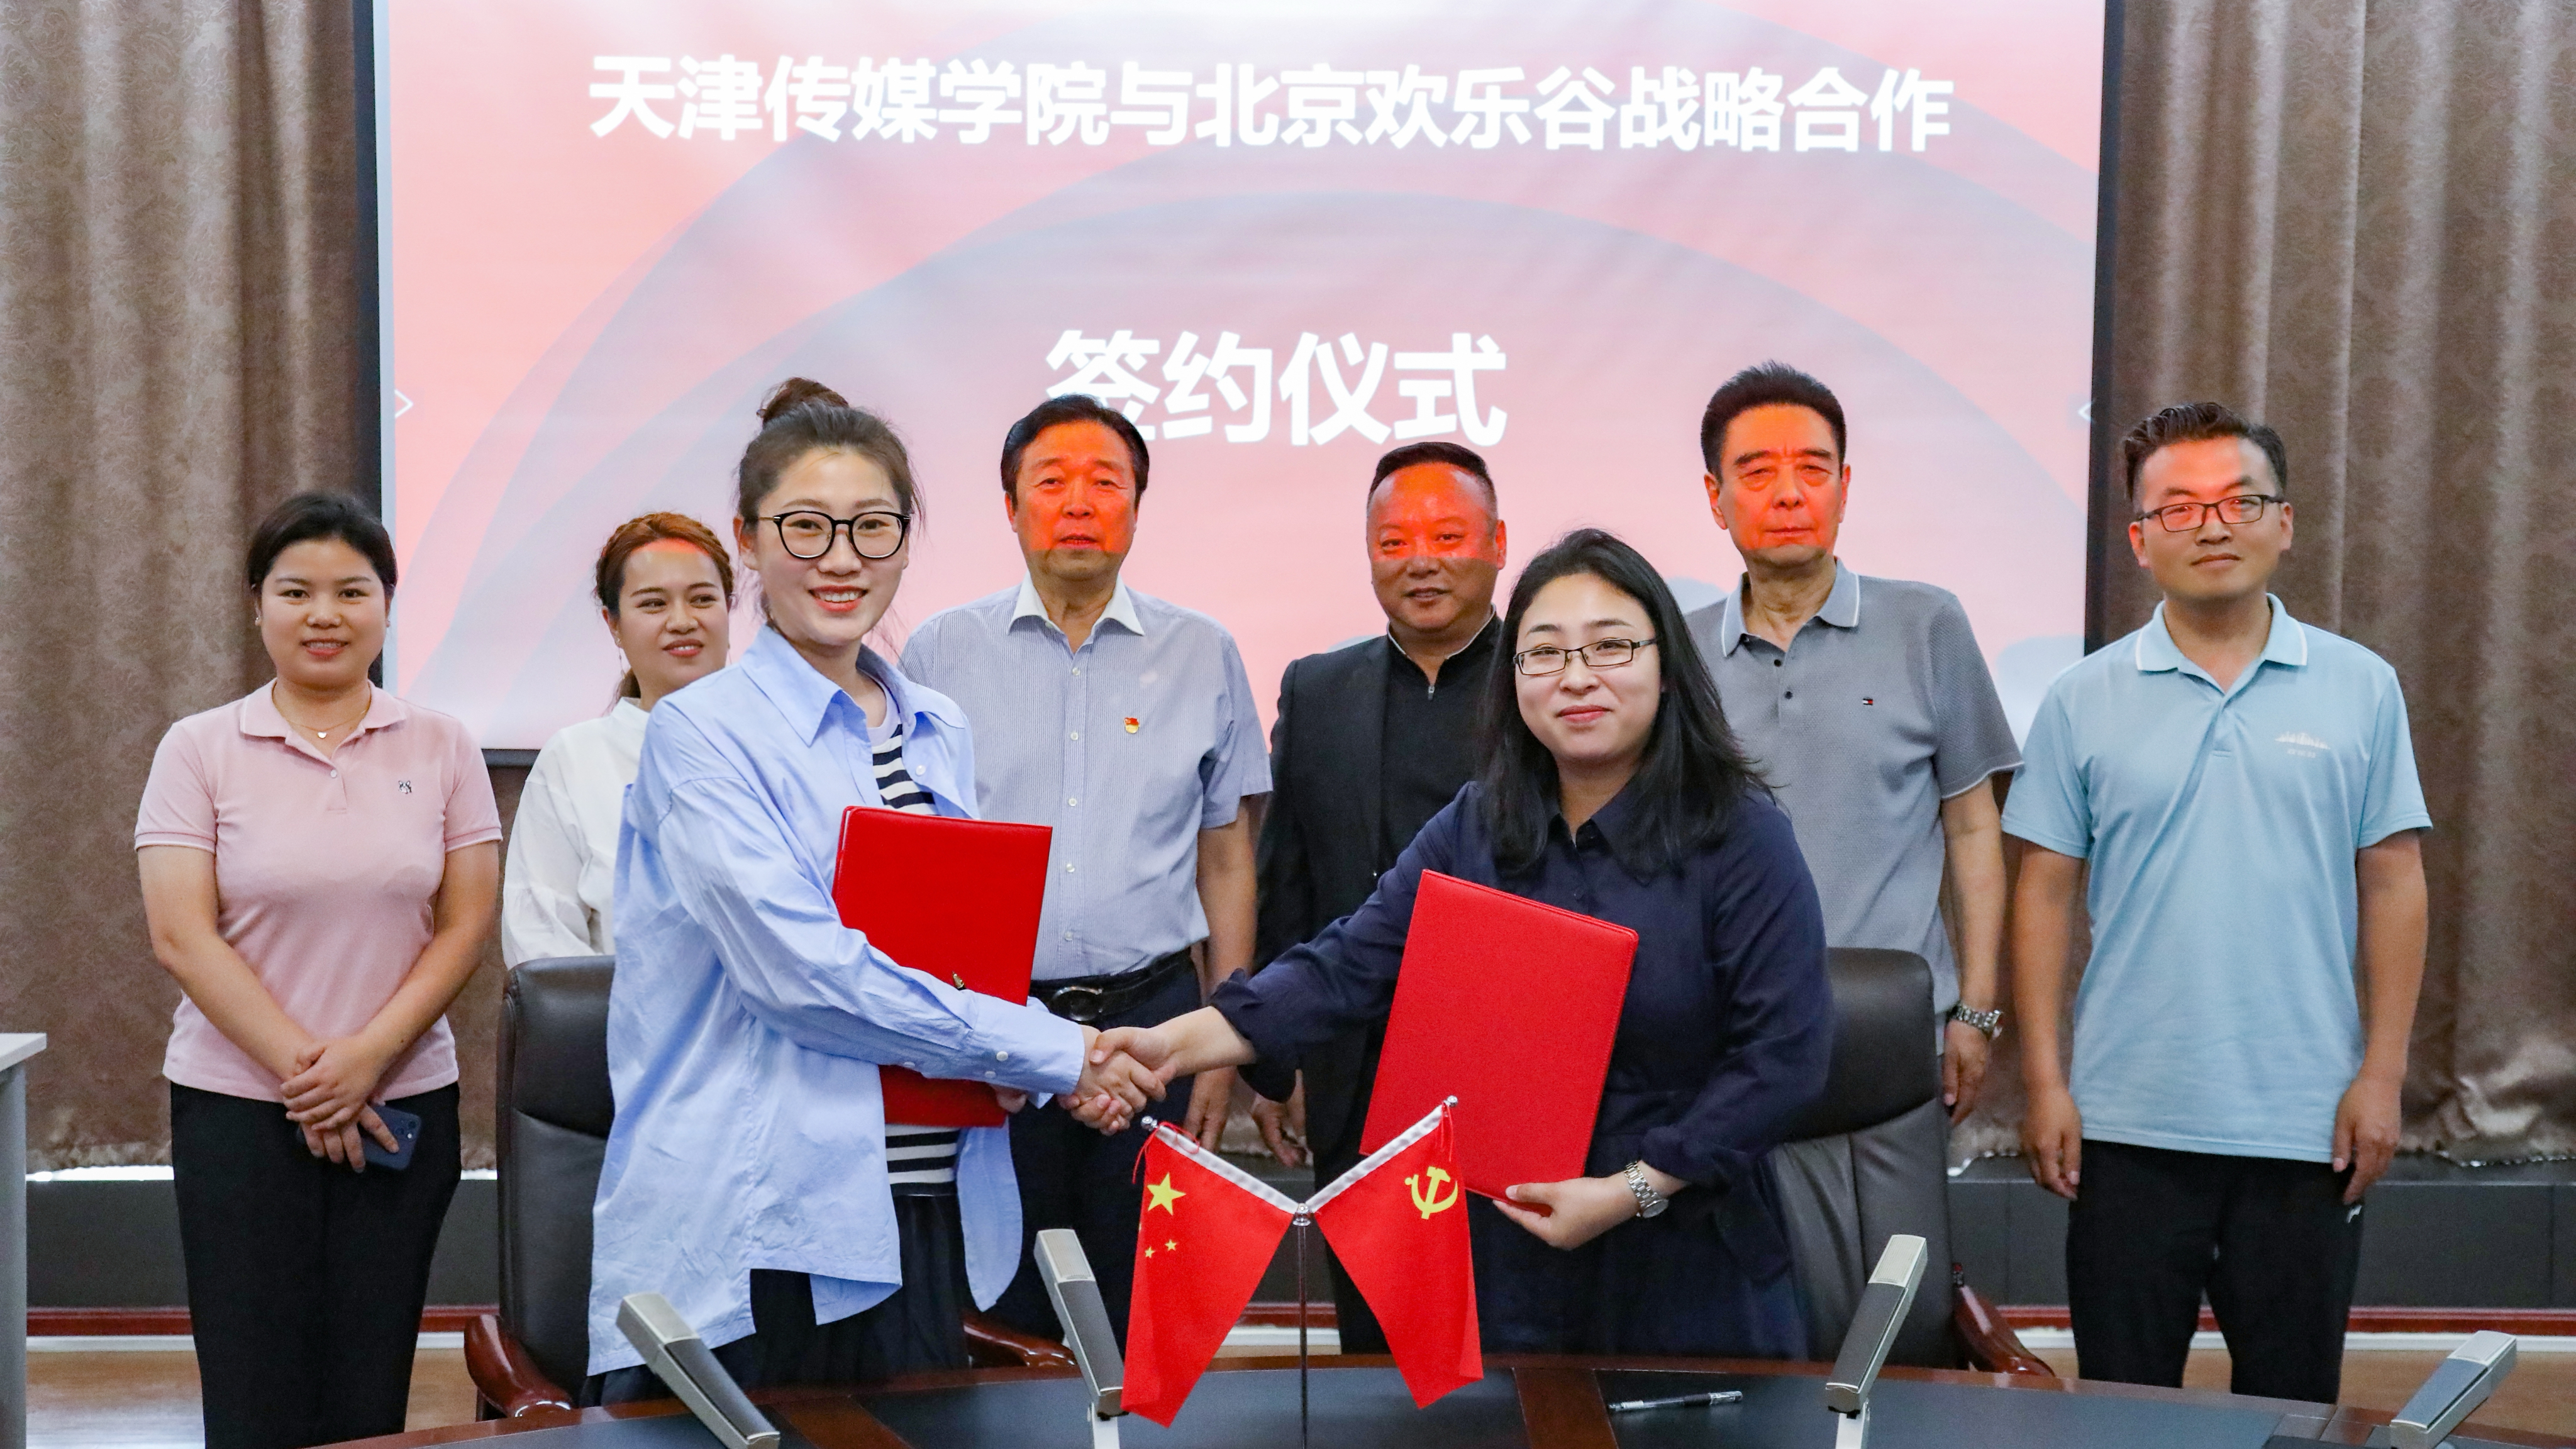 天津传媒学院与北京欢乐谷签订校企合作战略协议